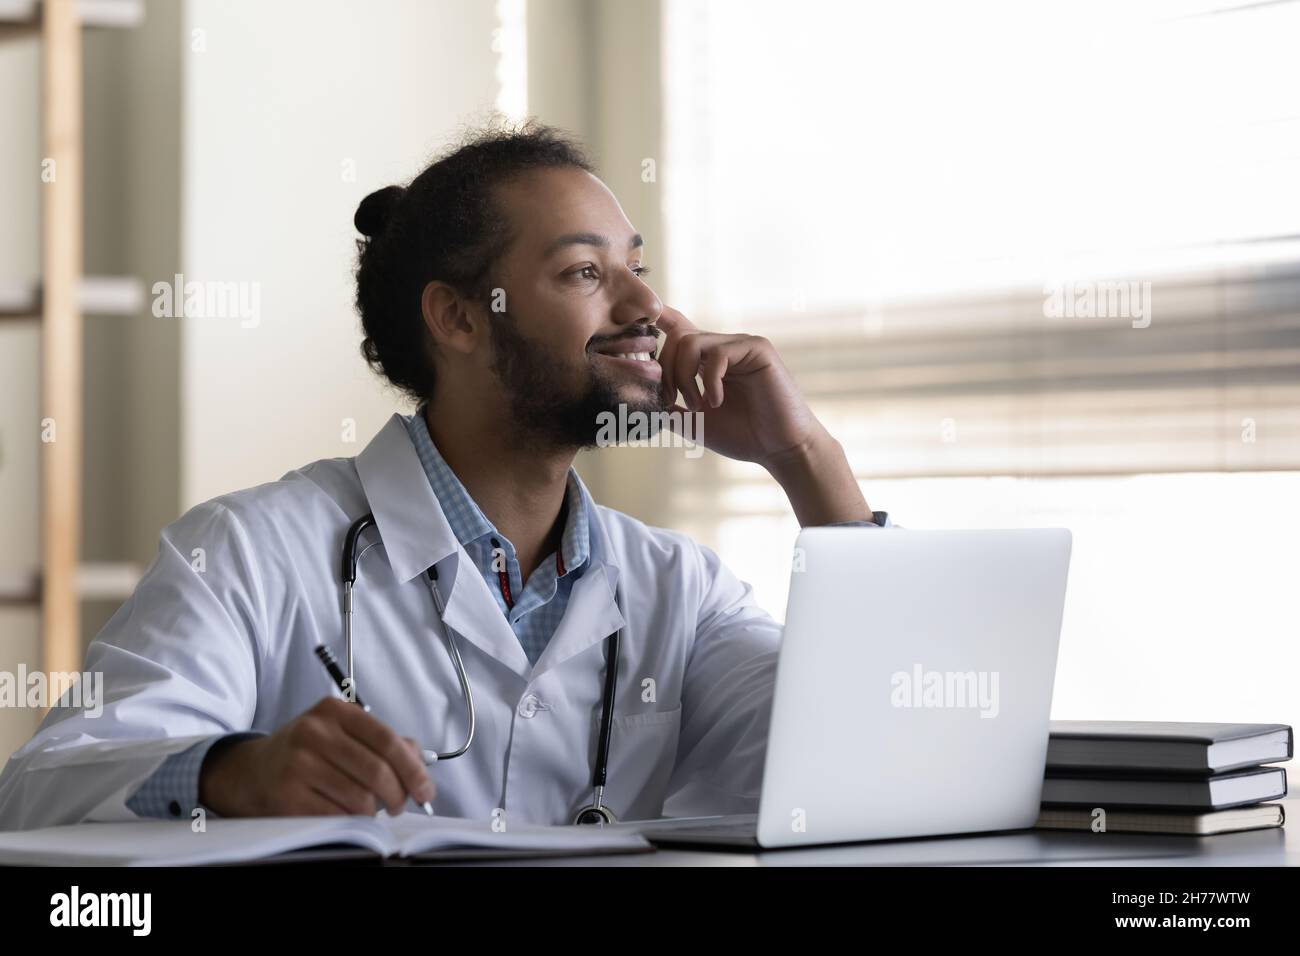 Un uomo medico afro-americano che sorride pensivo prendendo appunti, usando un computer portatile Foto Stock